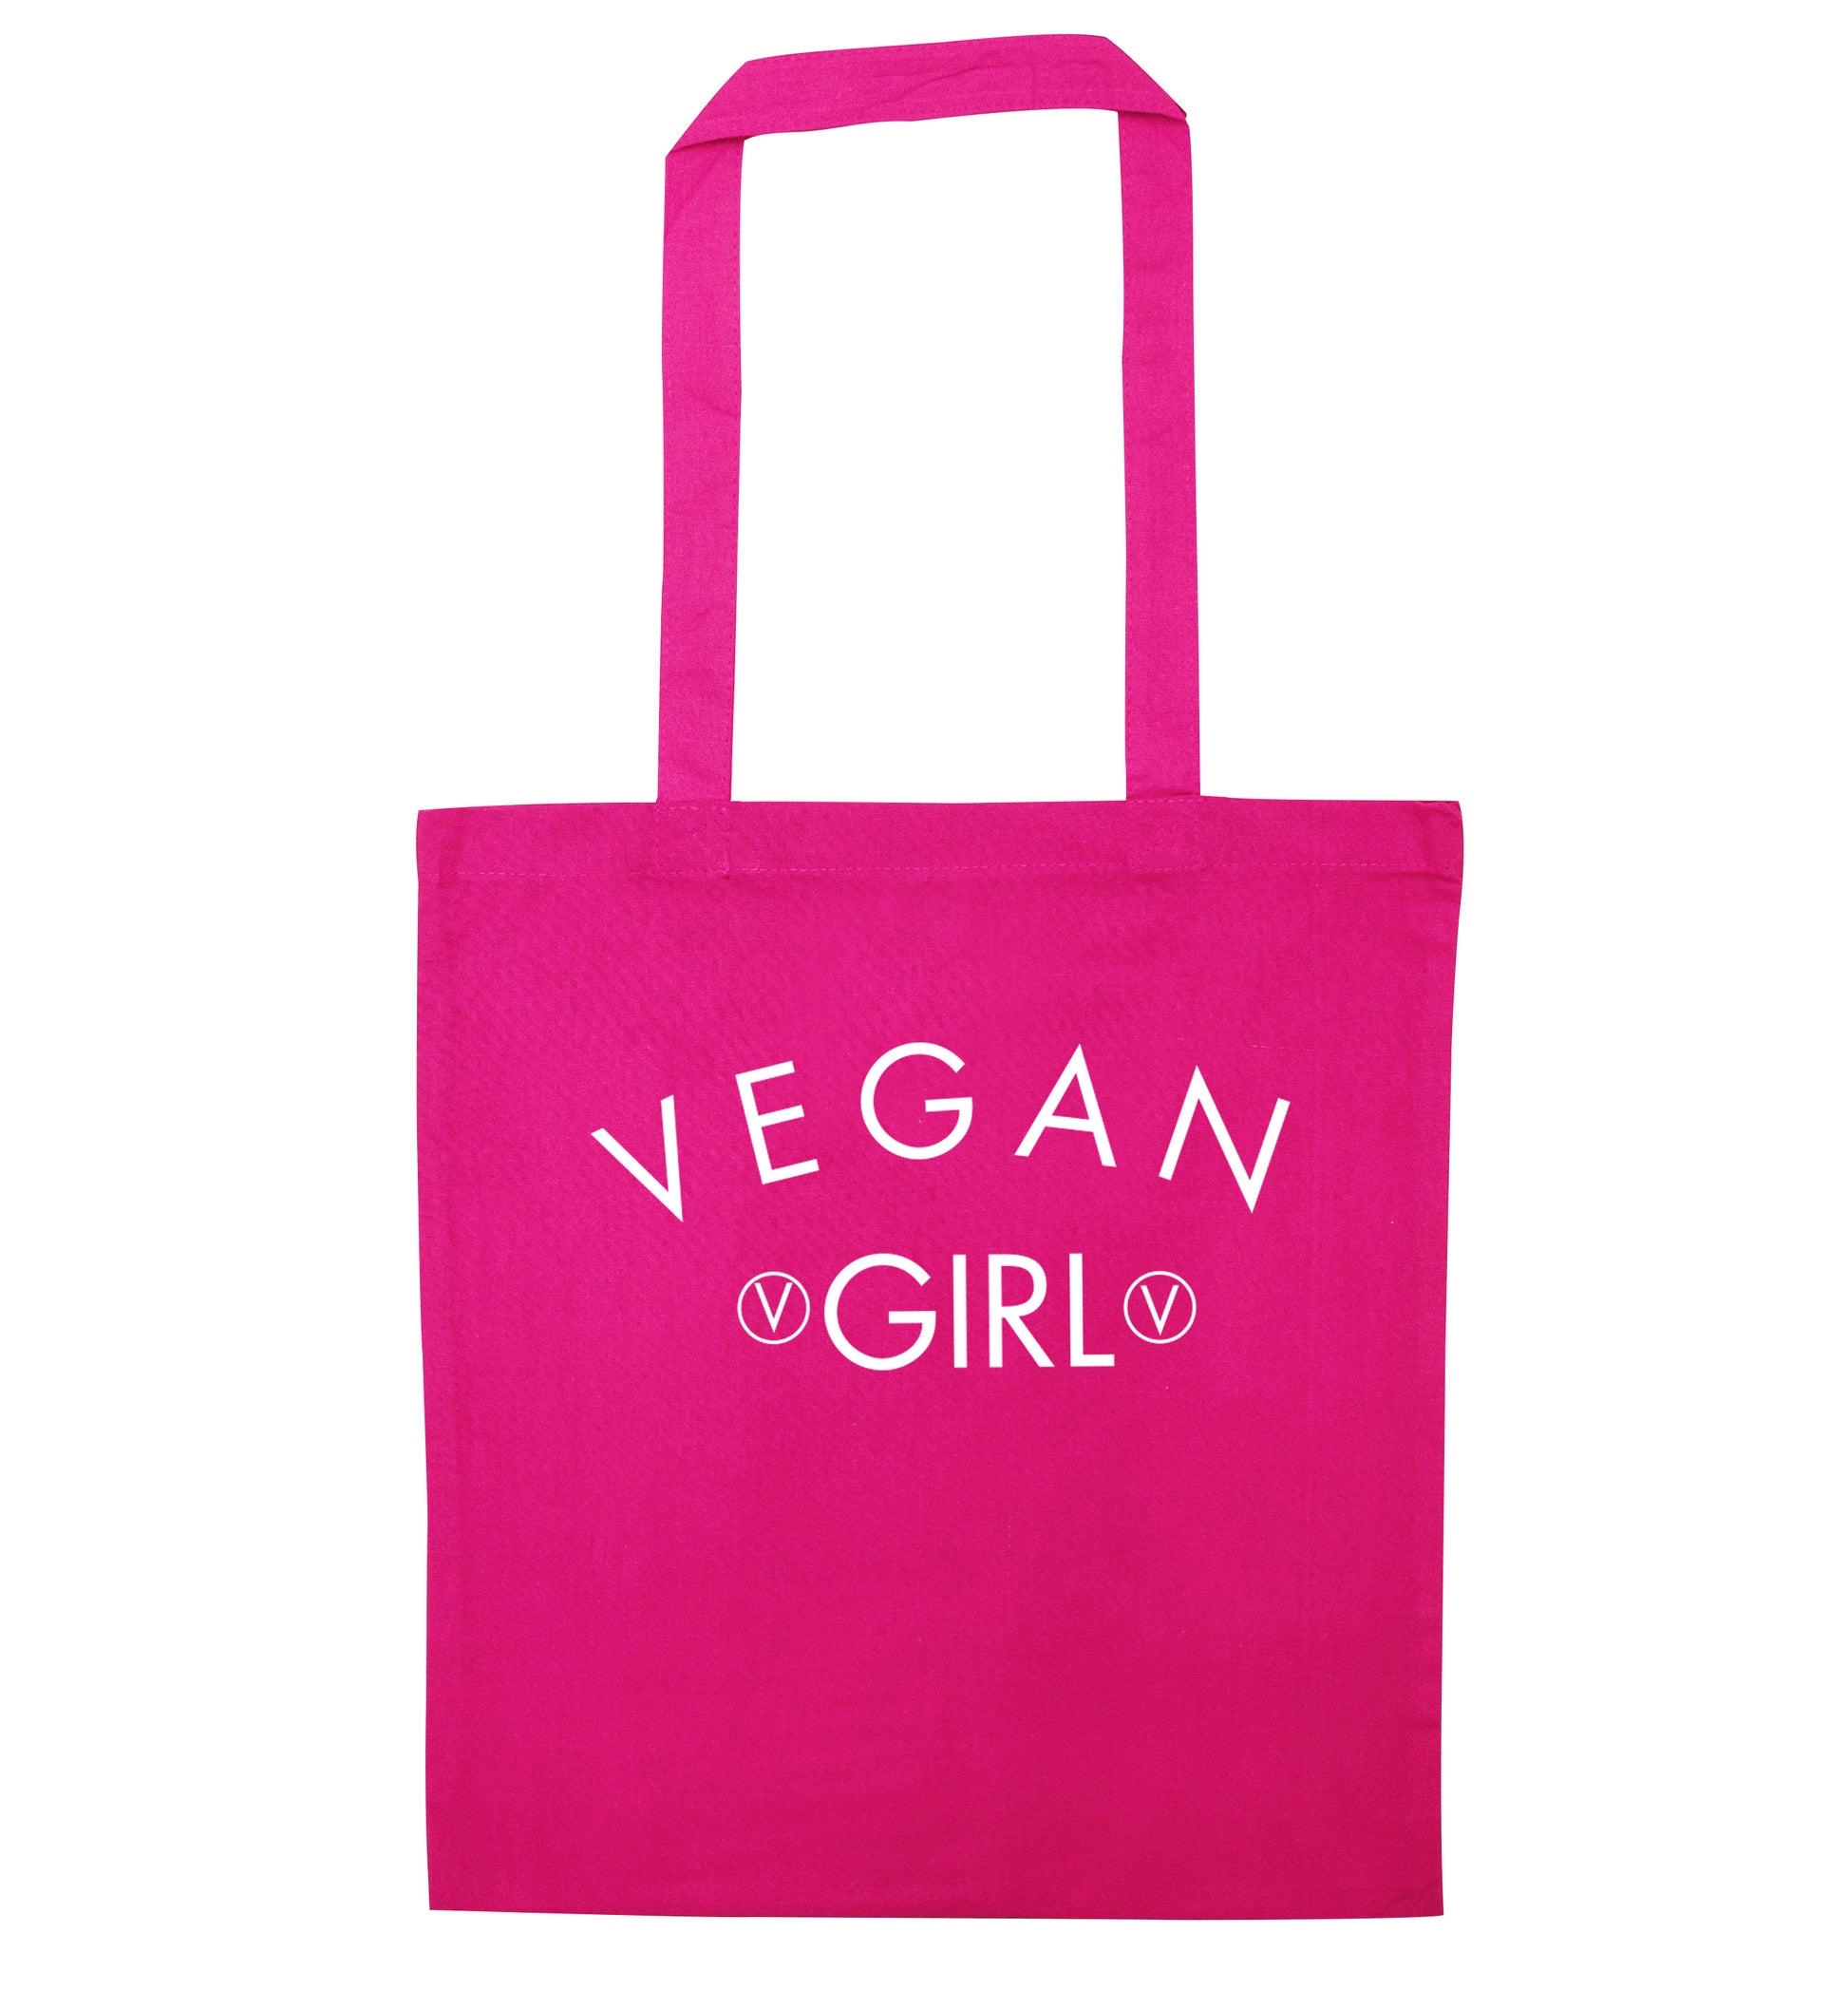 Vegan girl pink tote bag